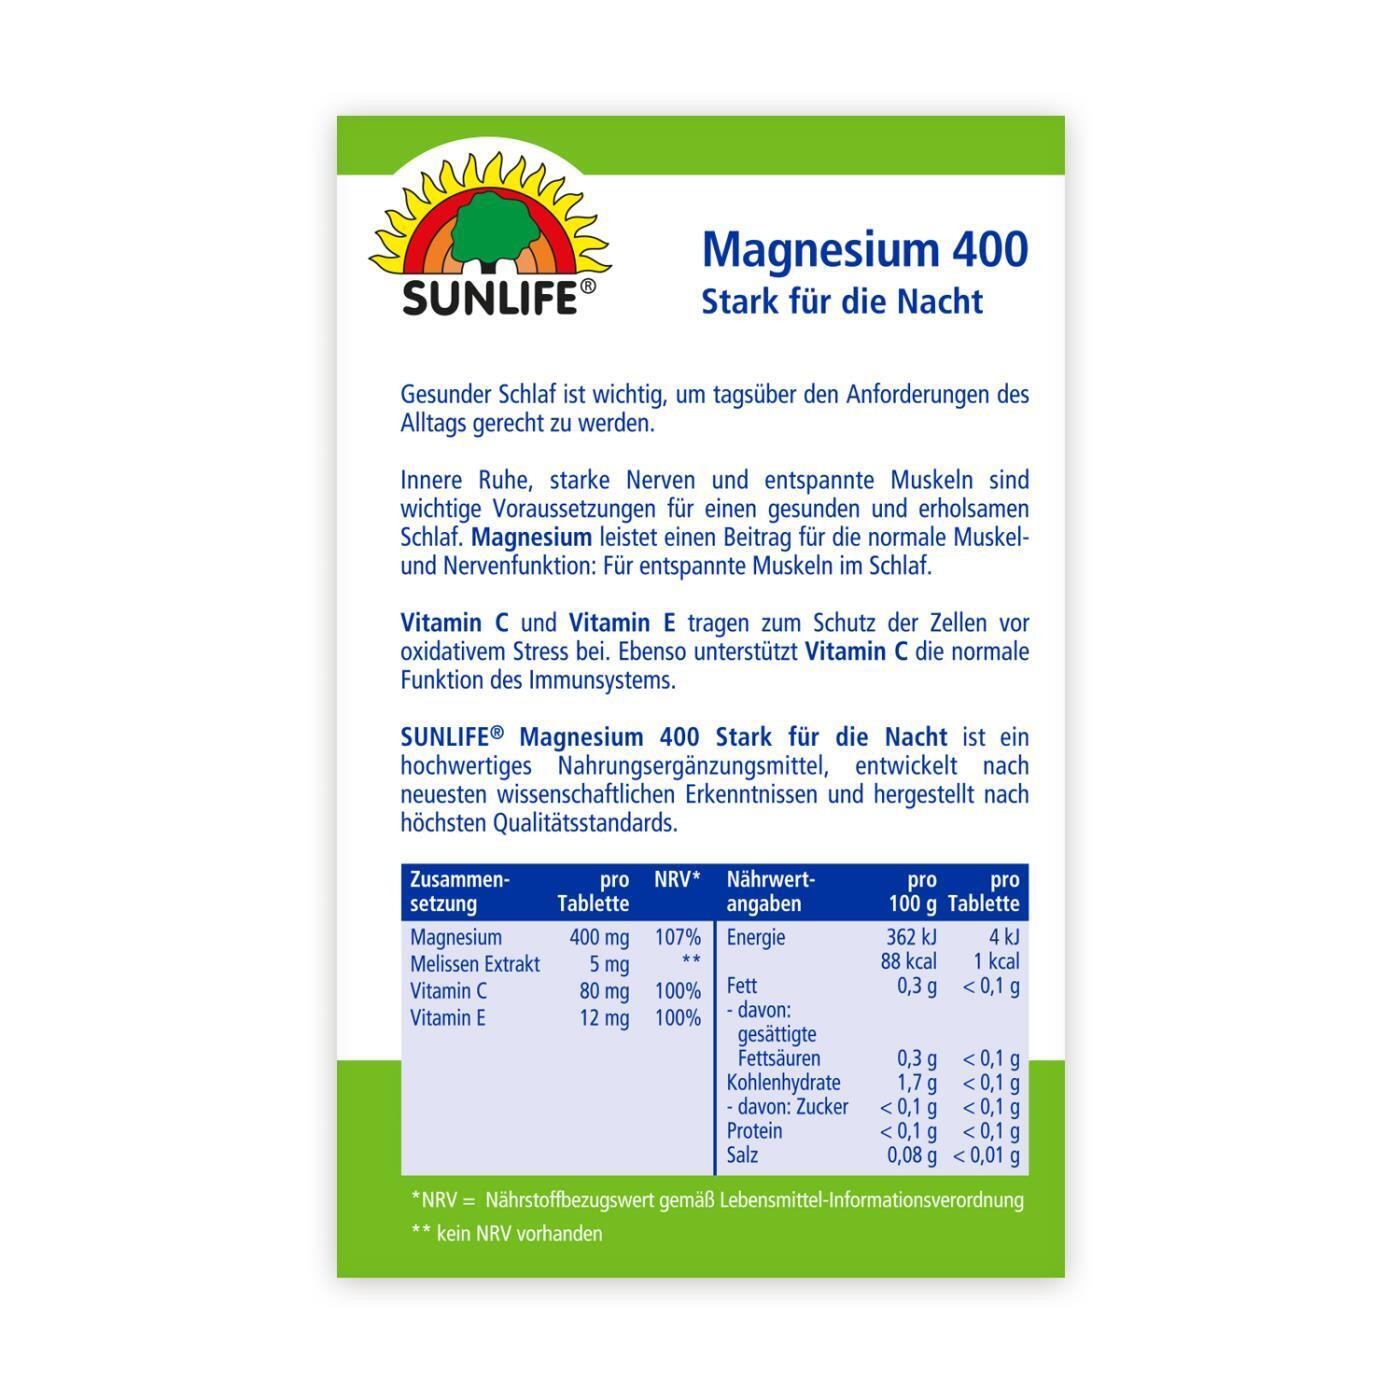 SUNLIFE Magnesium Stark für die Nacht 32 Tabletten 38,4g Vegane Rezeptur